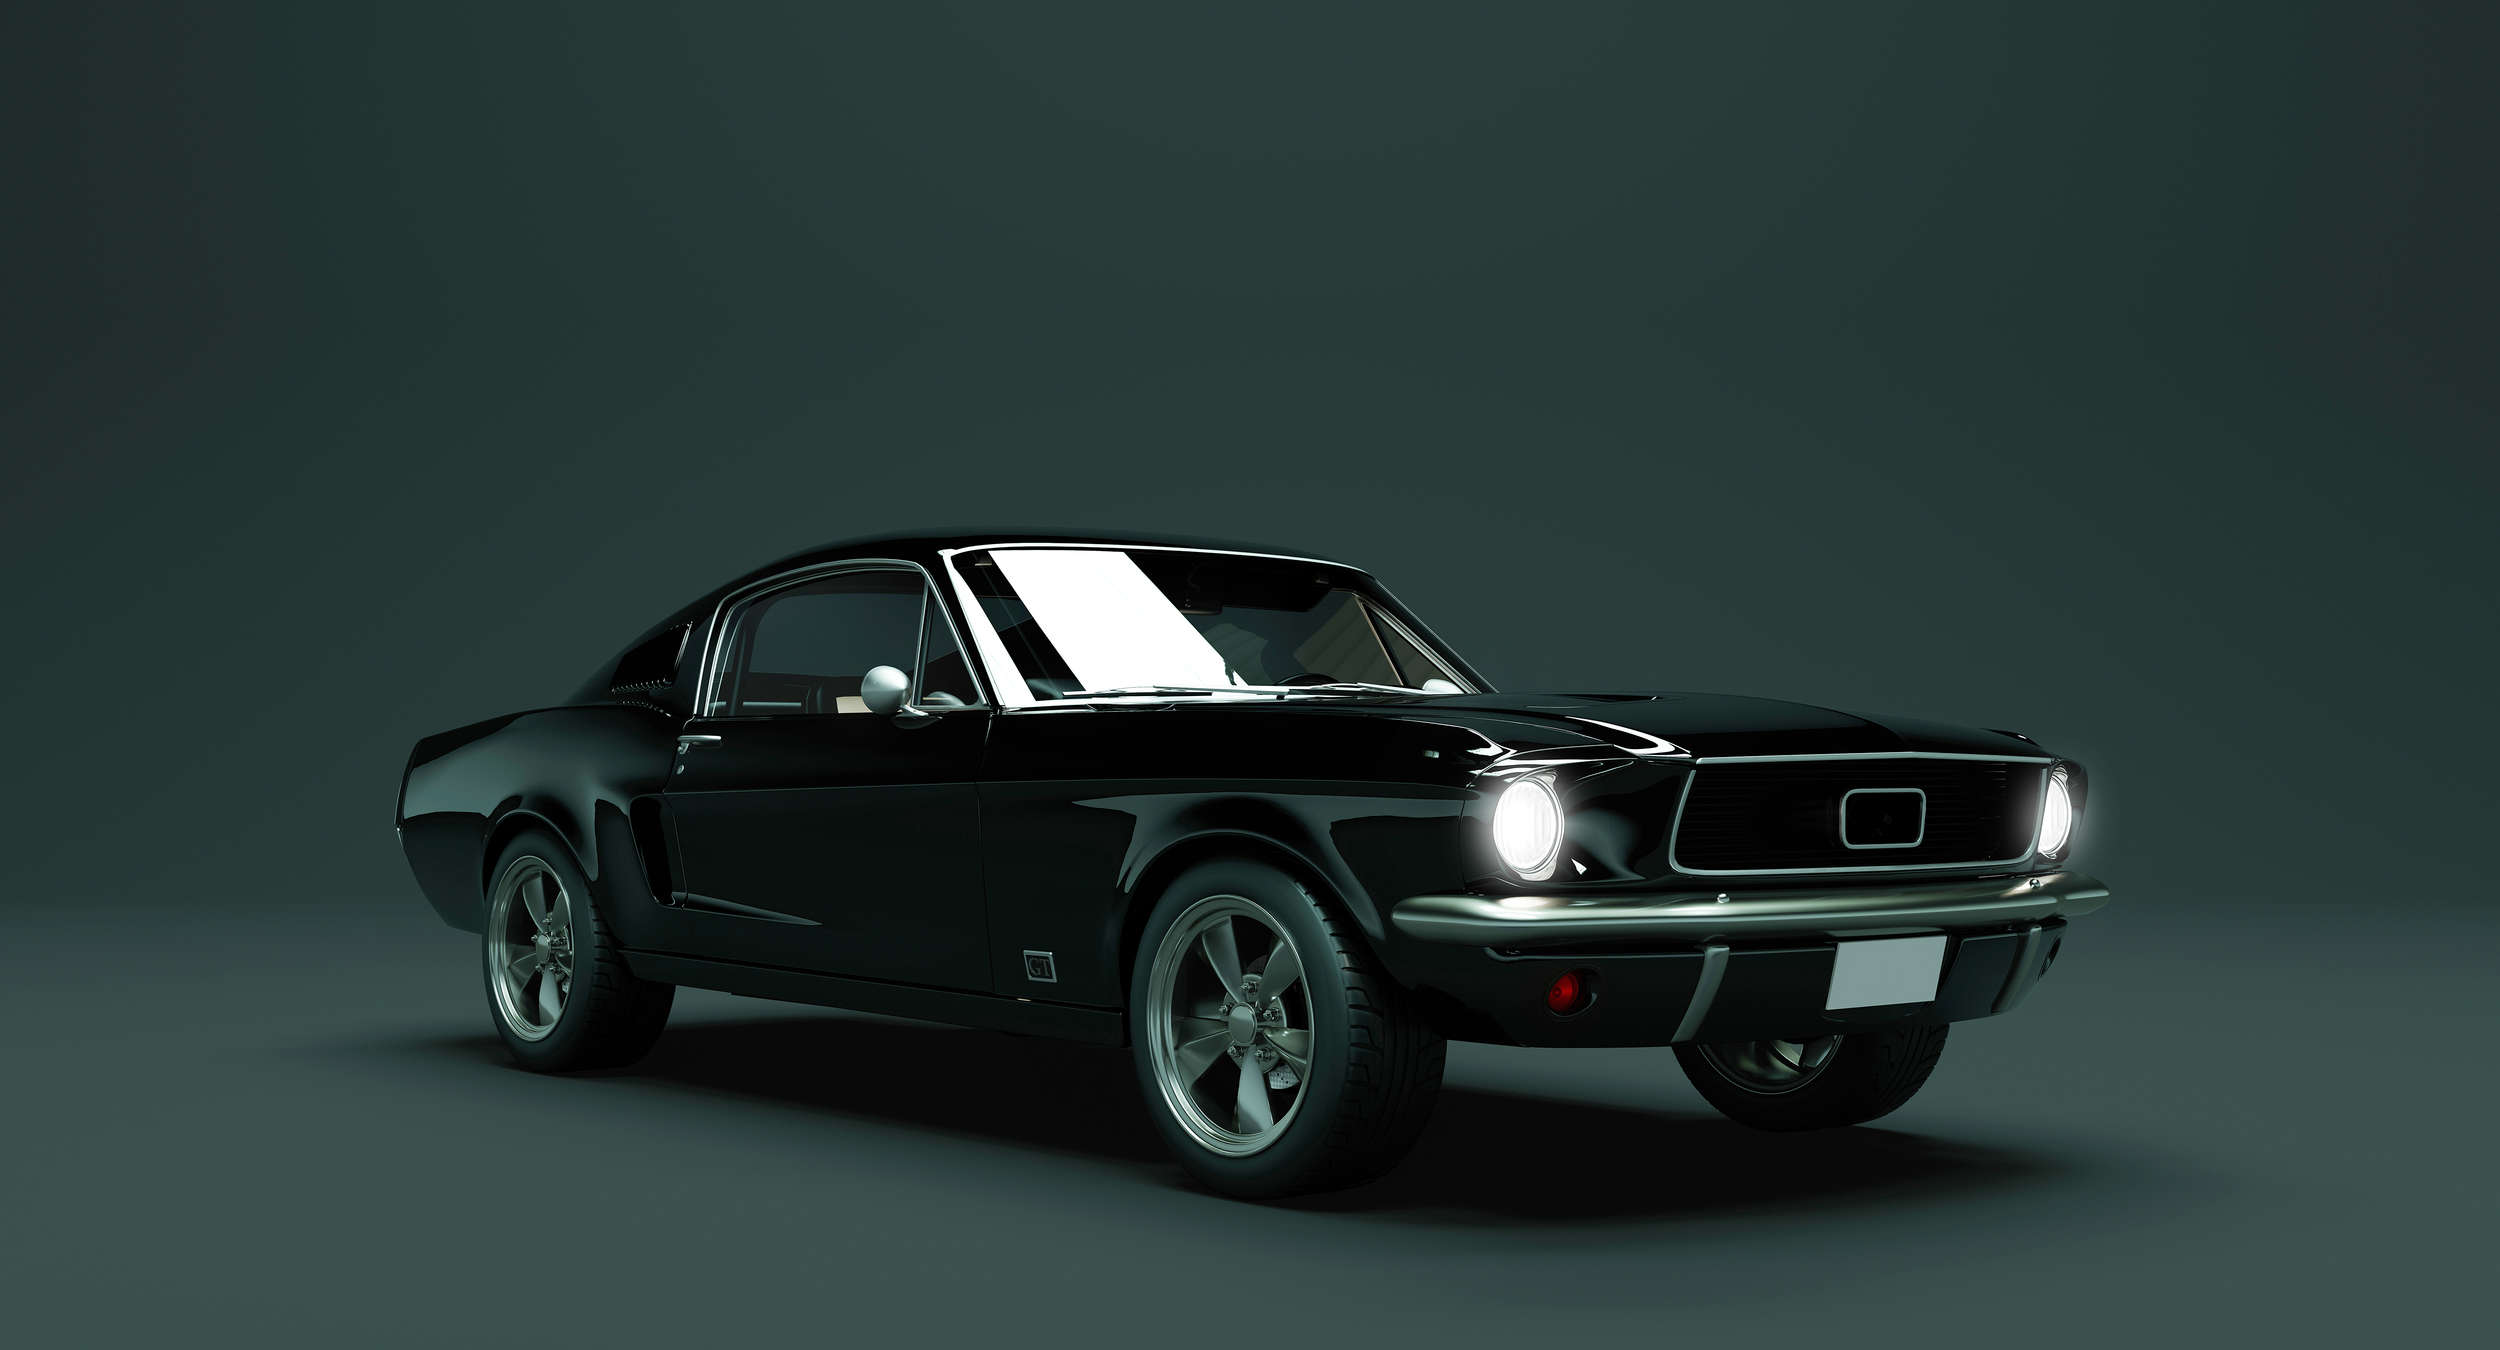             Mustang 2 - Photo wallpaper, Mustang 1968 Vintage Car - Blue, Black | Matt smooth fleece
        